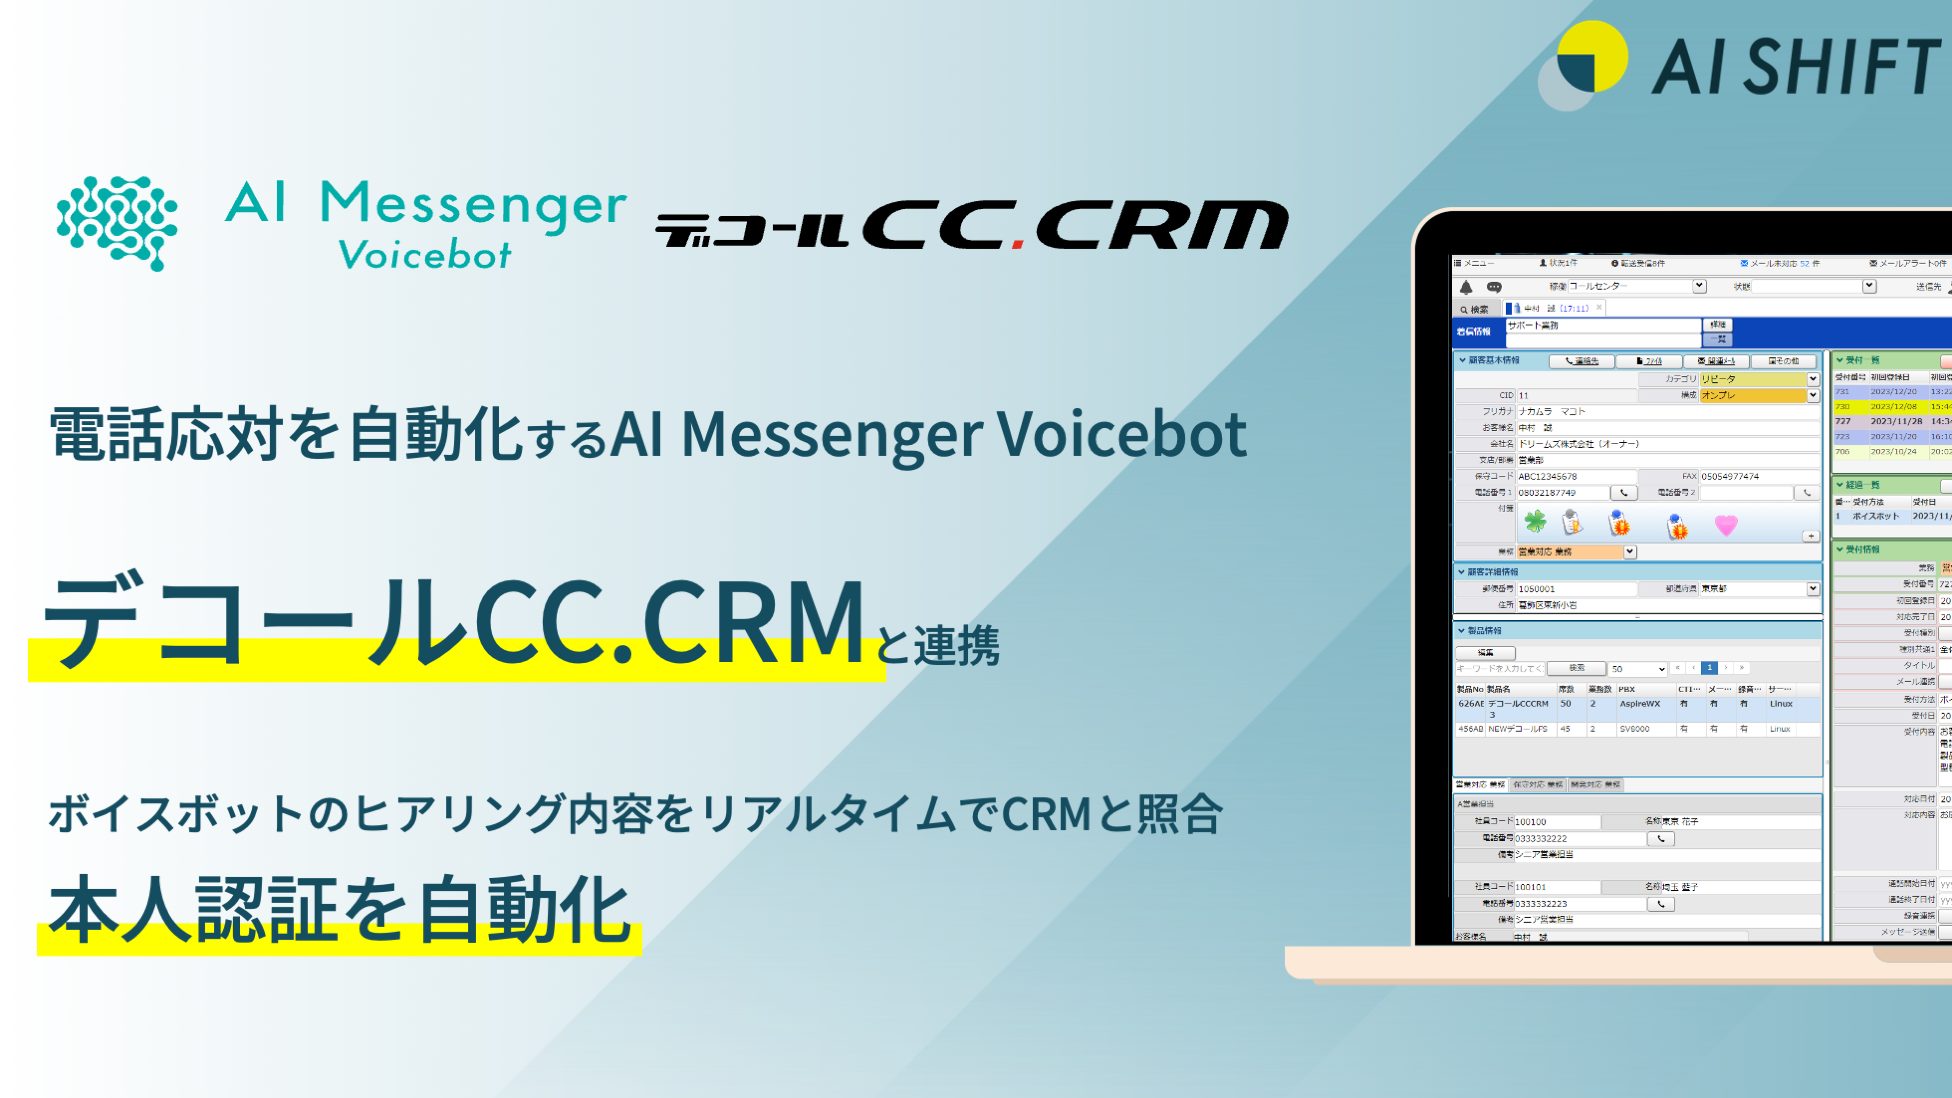 電話応対を自動化する「AI Messenger Voicebot」、AI時代のコンタクトセンター向けCRMシステム「デコールCC.CRM」とシステム連携